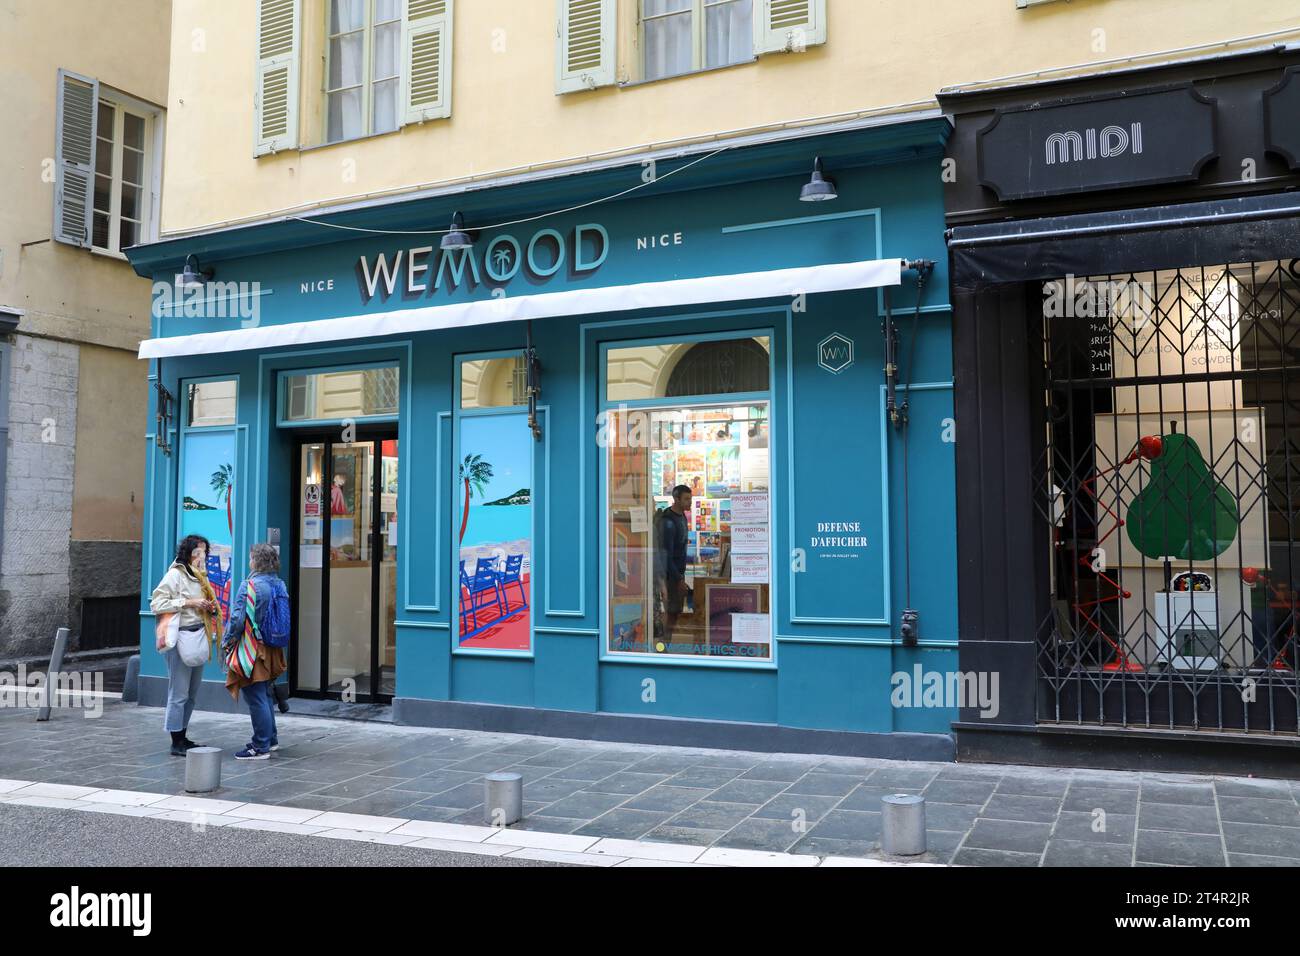 WEMOOD Plakatladen in der Altstadt von Nizza Stockfoto